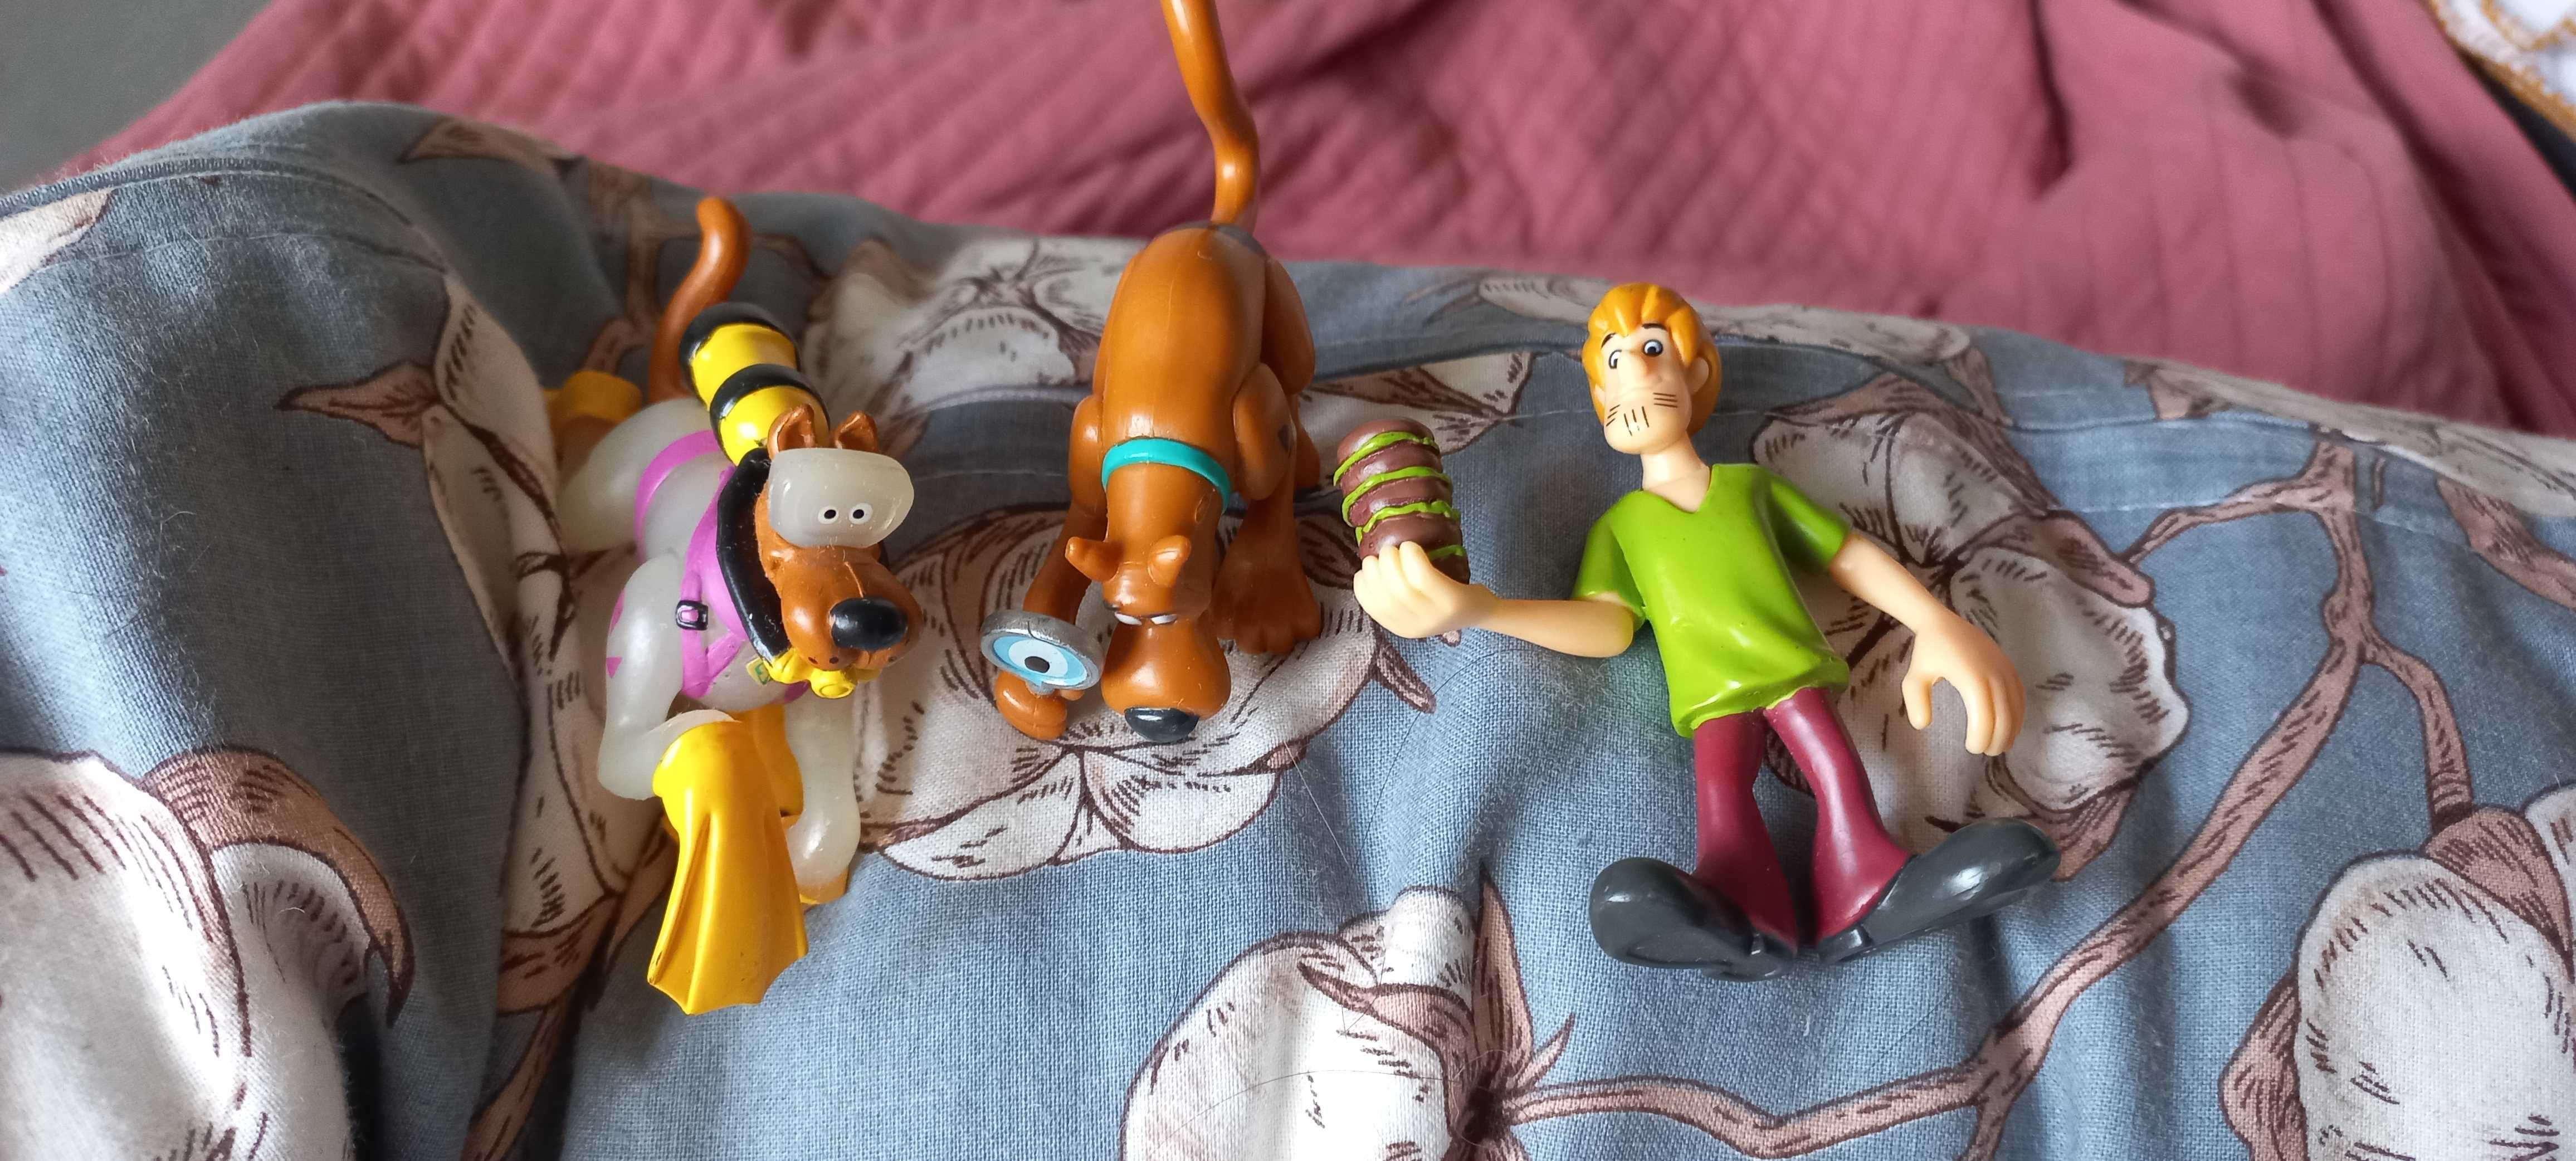 Figurki z bajki Scooby Doo